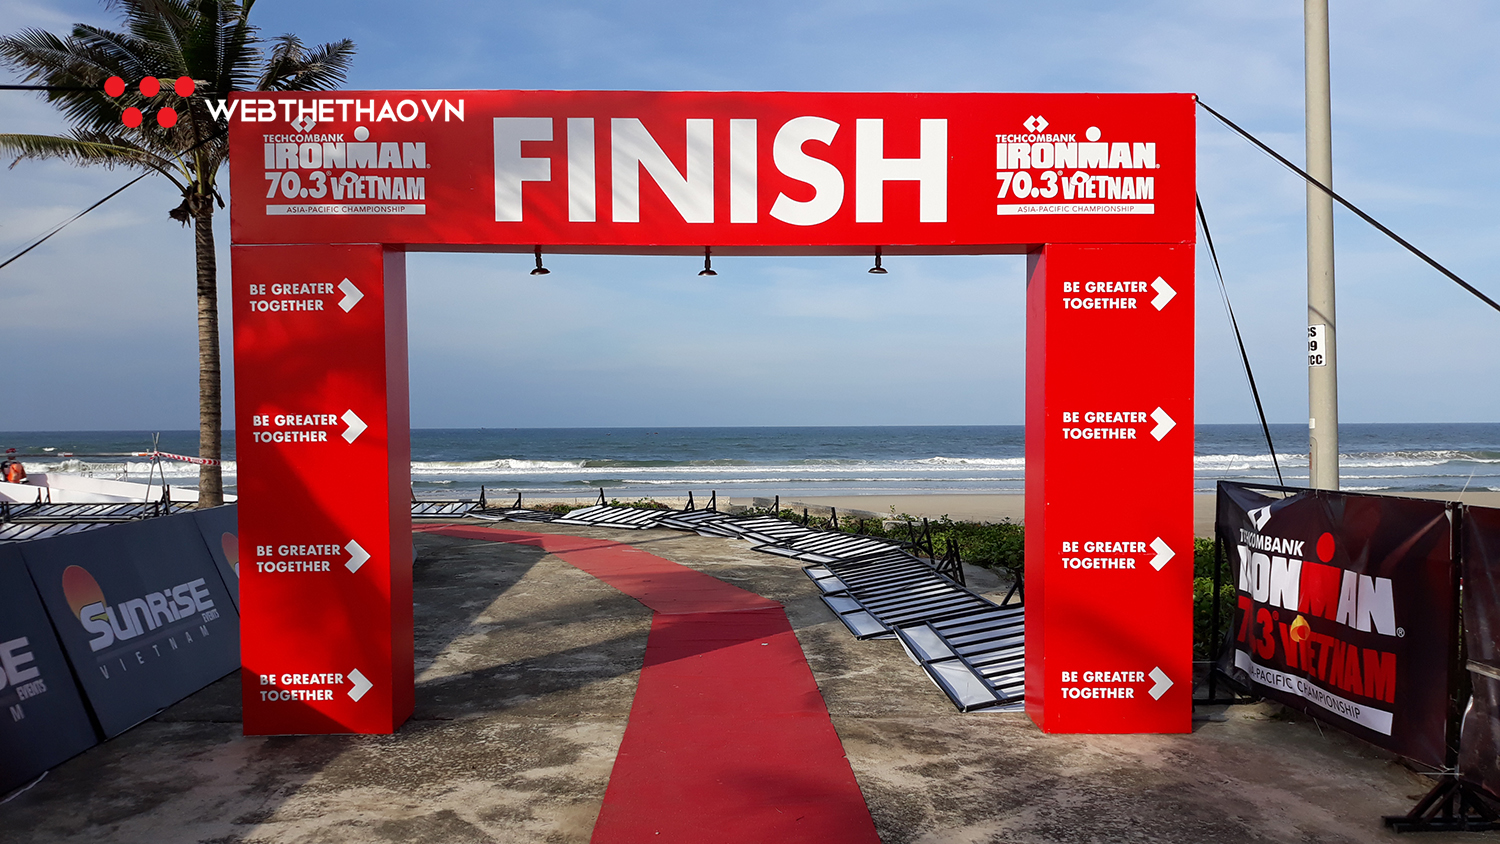 Khám phá đường đua IRONMAN 70.3 Việt Nam Vô địch châu Á Thái Bình Dương 2019